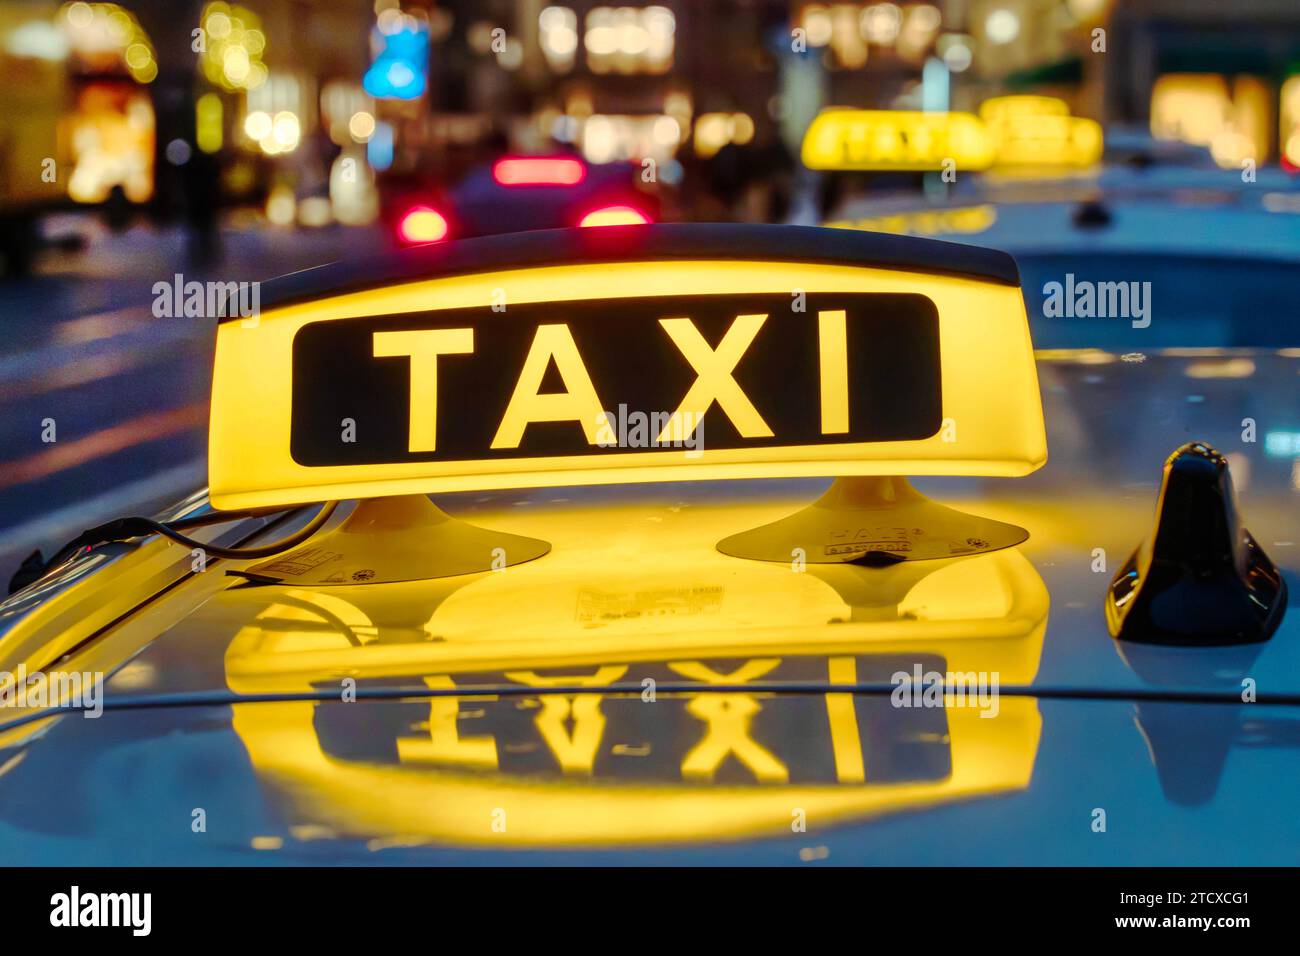 Gelbe Taxi-Schild Auf Taxi Auto Am Abend Oder In Der Nacht In Der  Stadtstraße Lizenzfreie Fotos, Bilder und Stock Fotografie. Image 60248308.